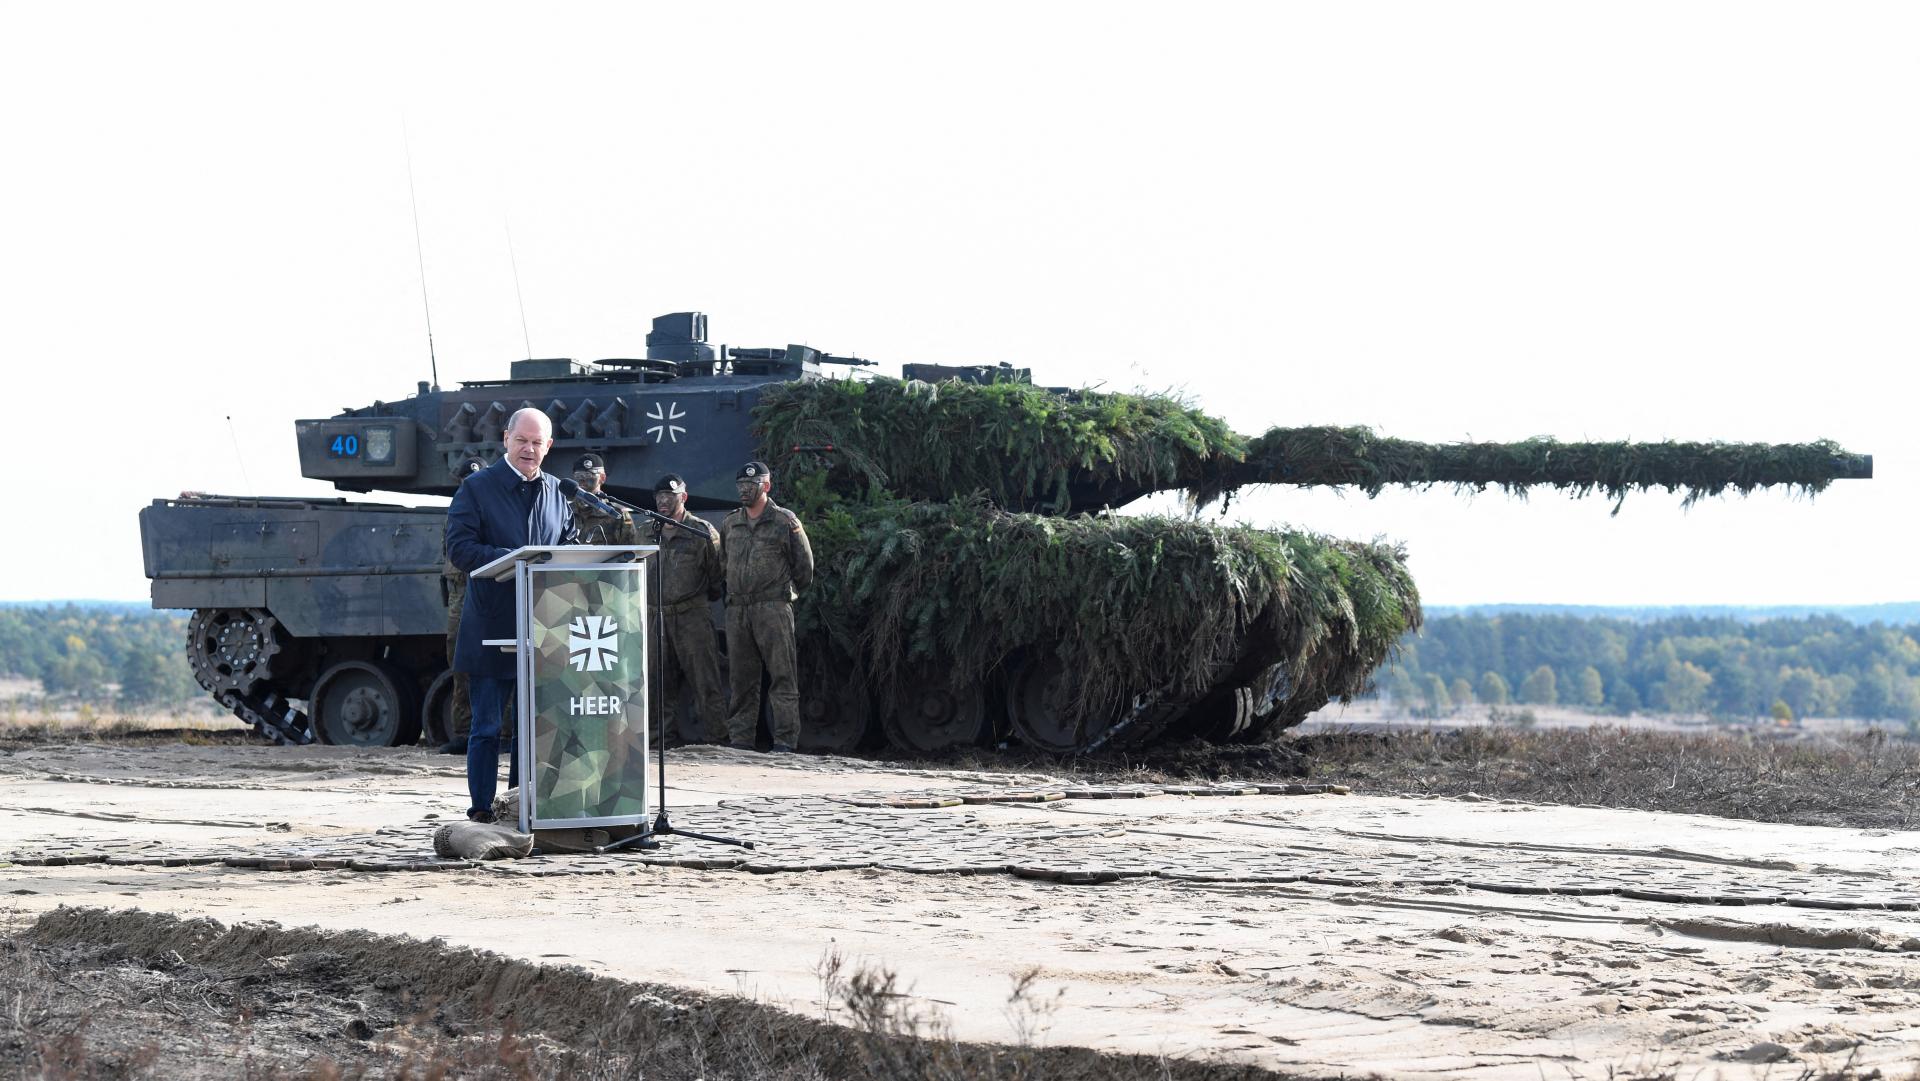 Nemecko oficiálne súhlasí s dodaním tankov Leopard 2. Povoliť by malo aj ich reexport ďalšími štátmi